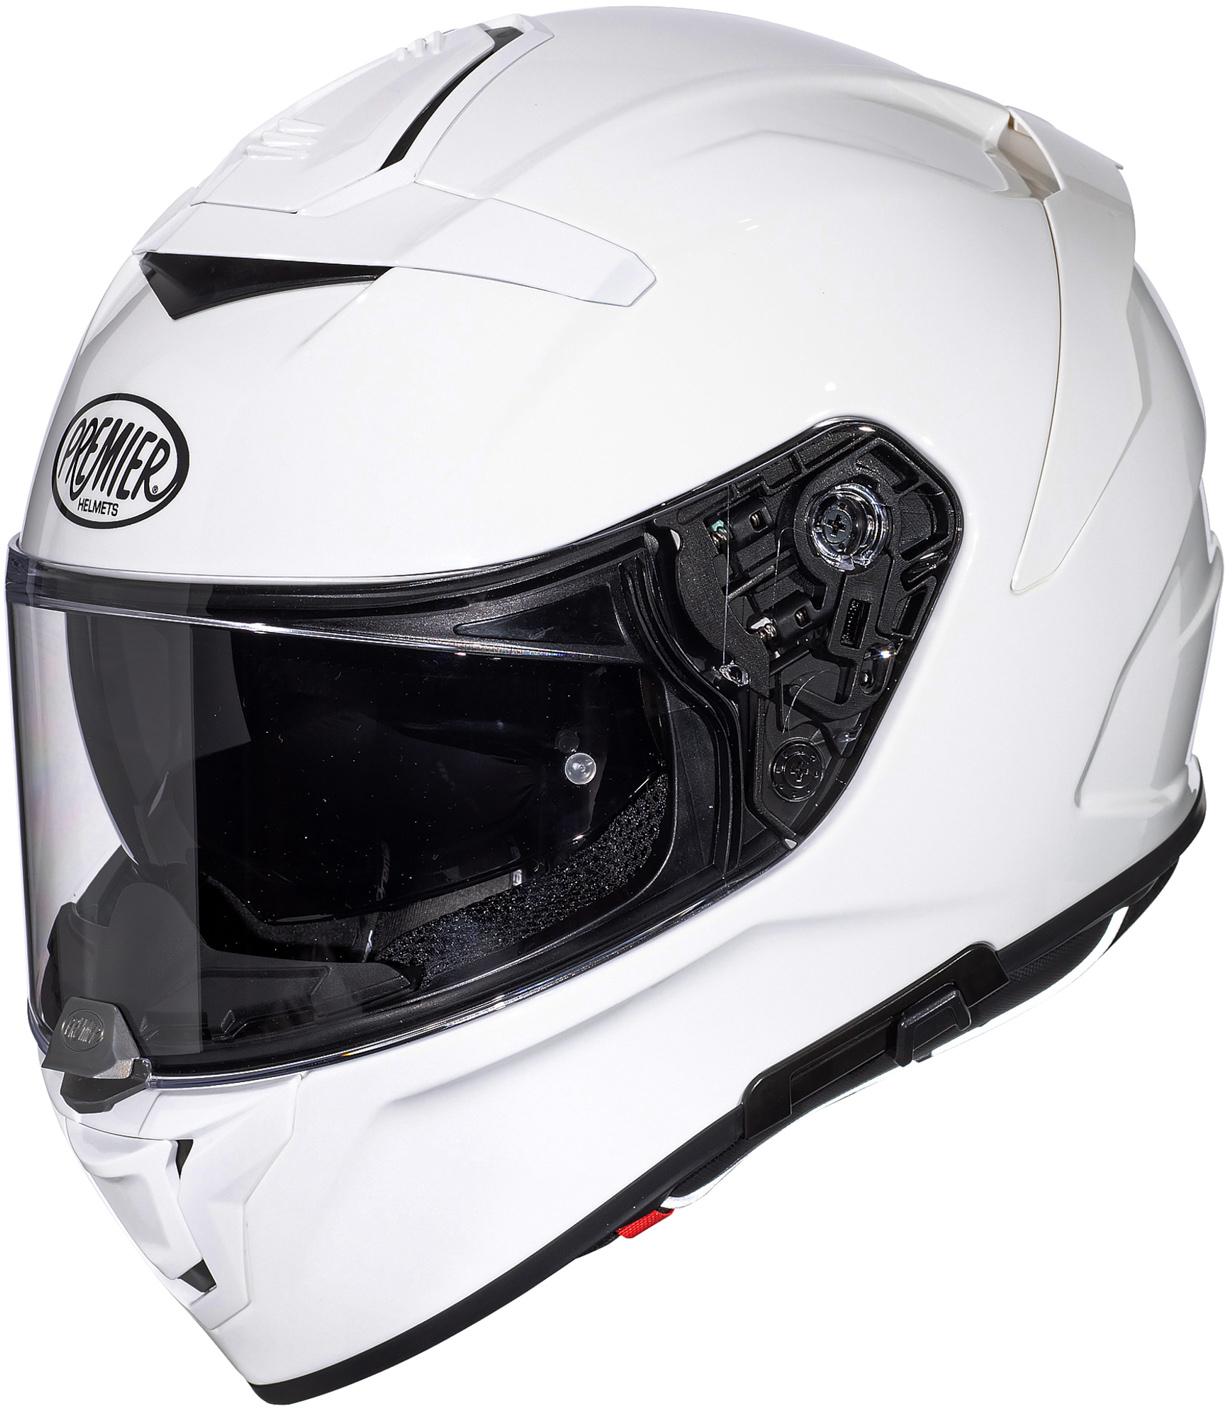 Premier Devil Full Face Motorcycle Helmet - White, Xl